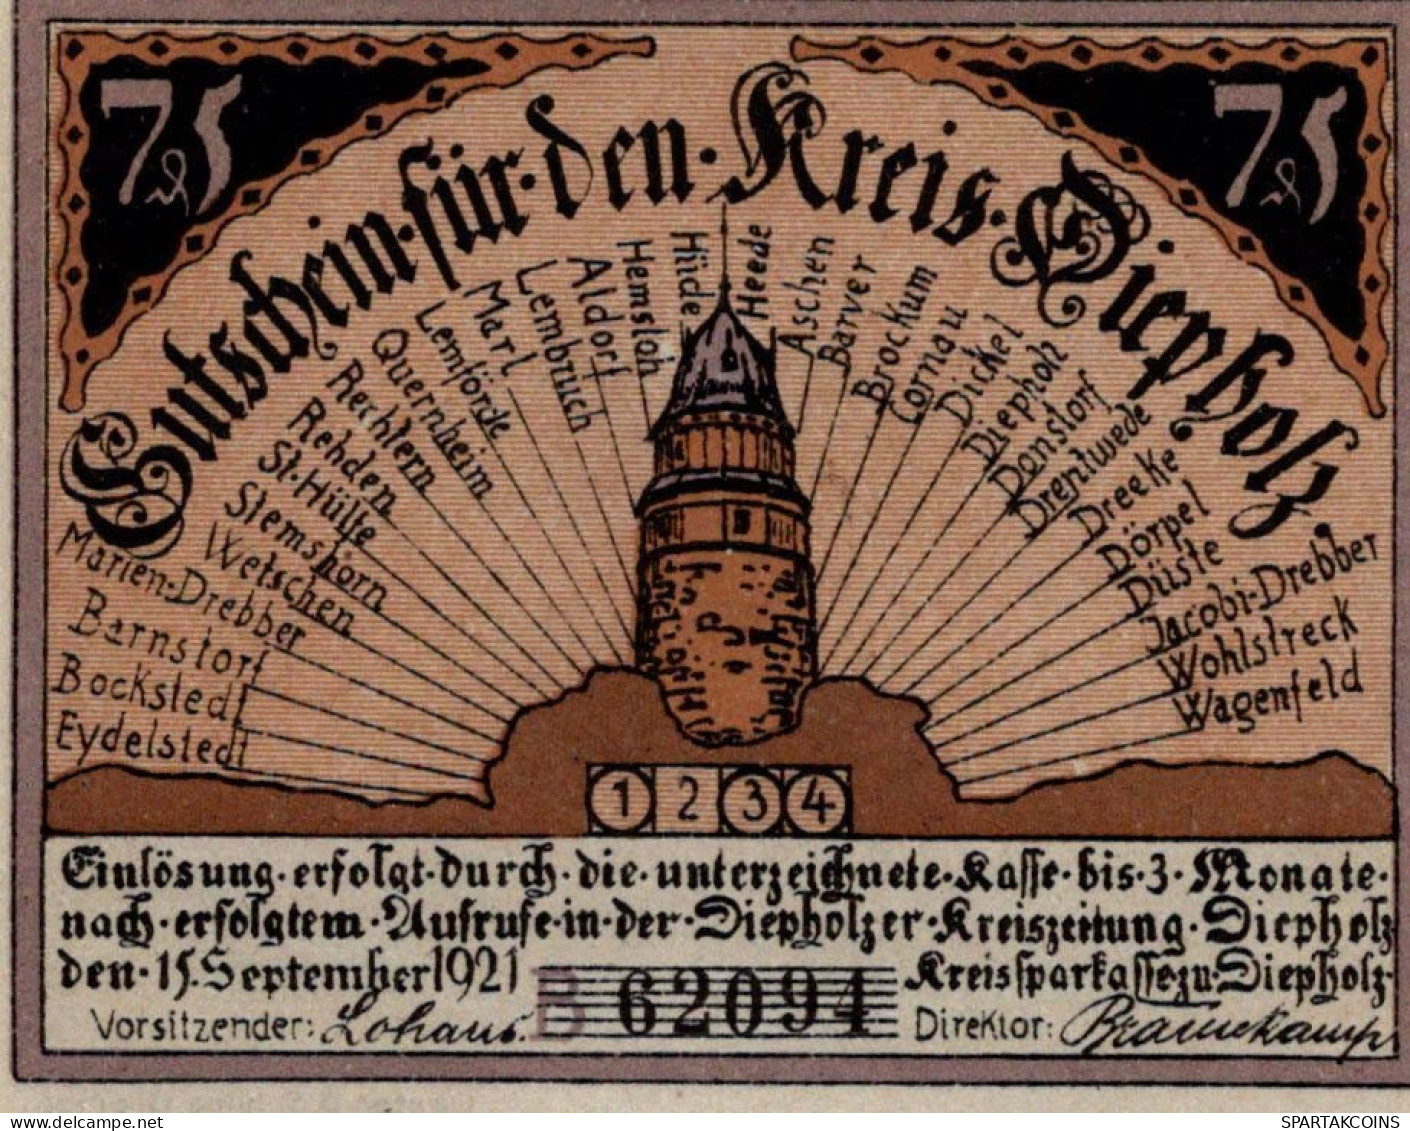 75 PFENNIG 1921 Stadt DIEPHOLZ Hanover UNC DEUTSCHLAND Notgeld Banknote #PA457 - [11] Local Banknote Issues